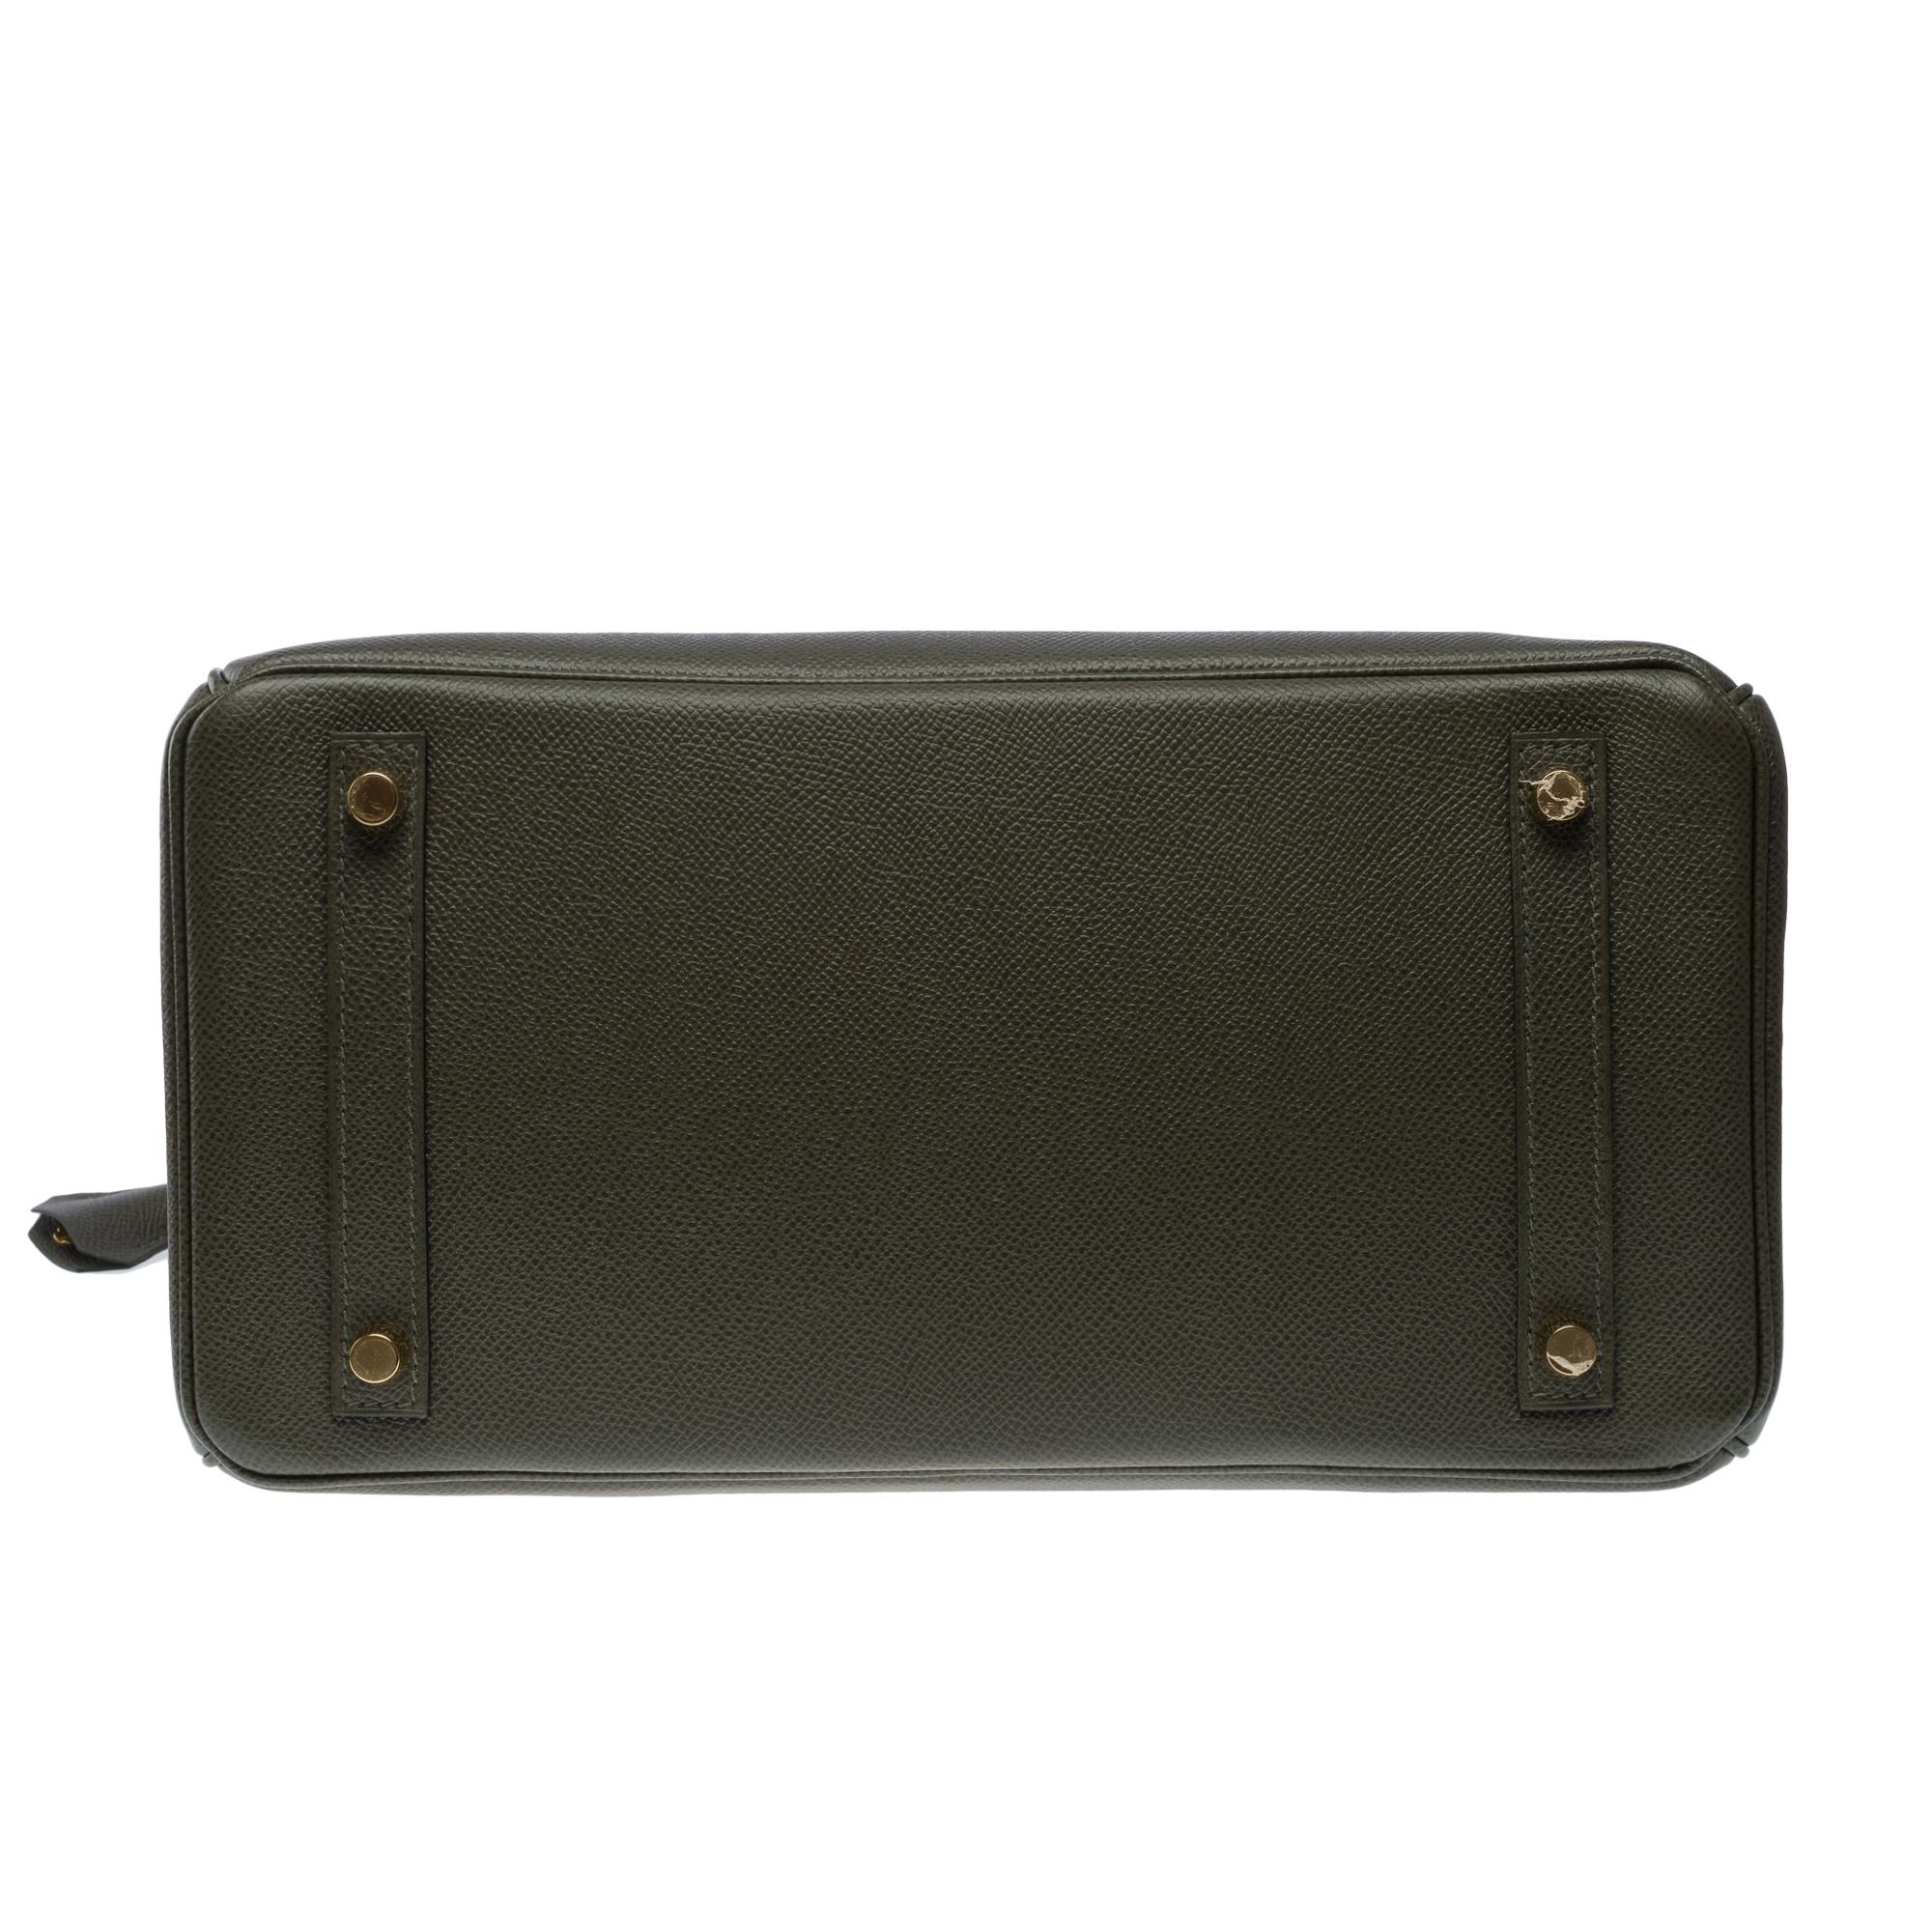 Splendid Hermes Birkin 30 handbag in Vert de Gris Epsom leather, SHW For Sale 6